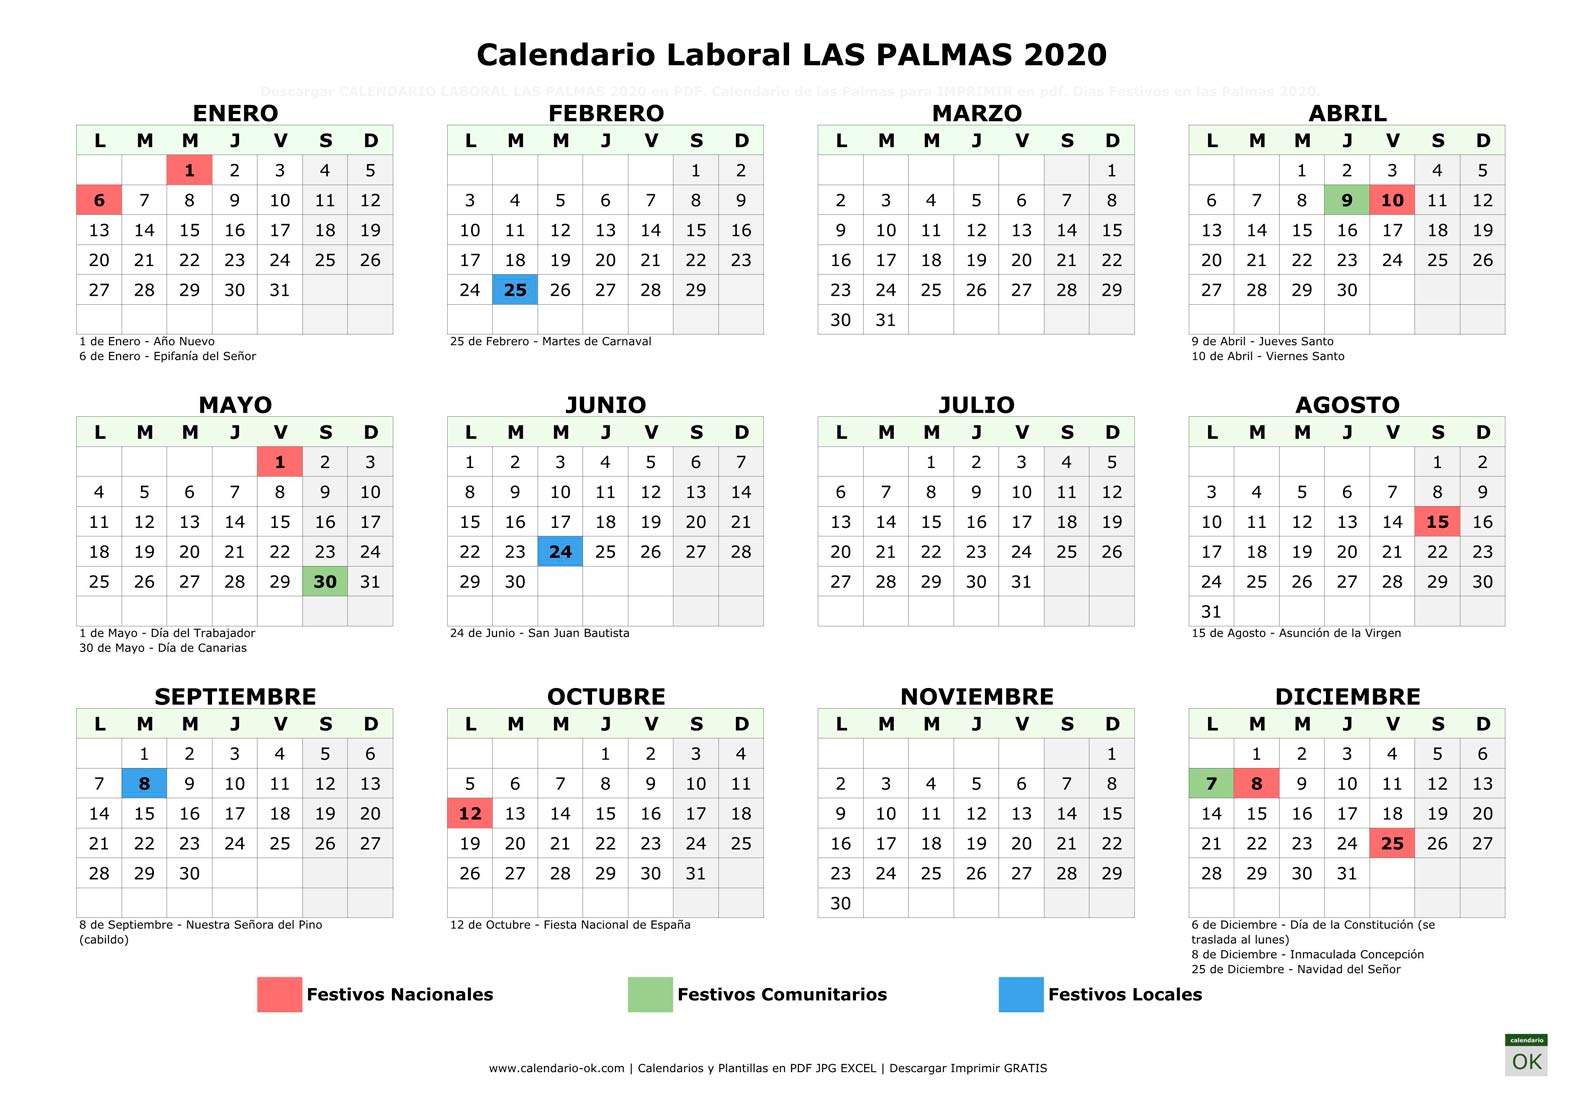 Calendario Laboral LAS PALMAS 2020 horizontal